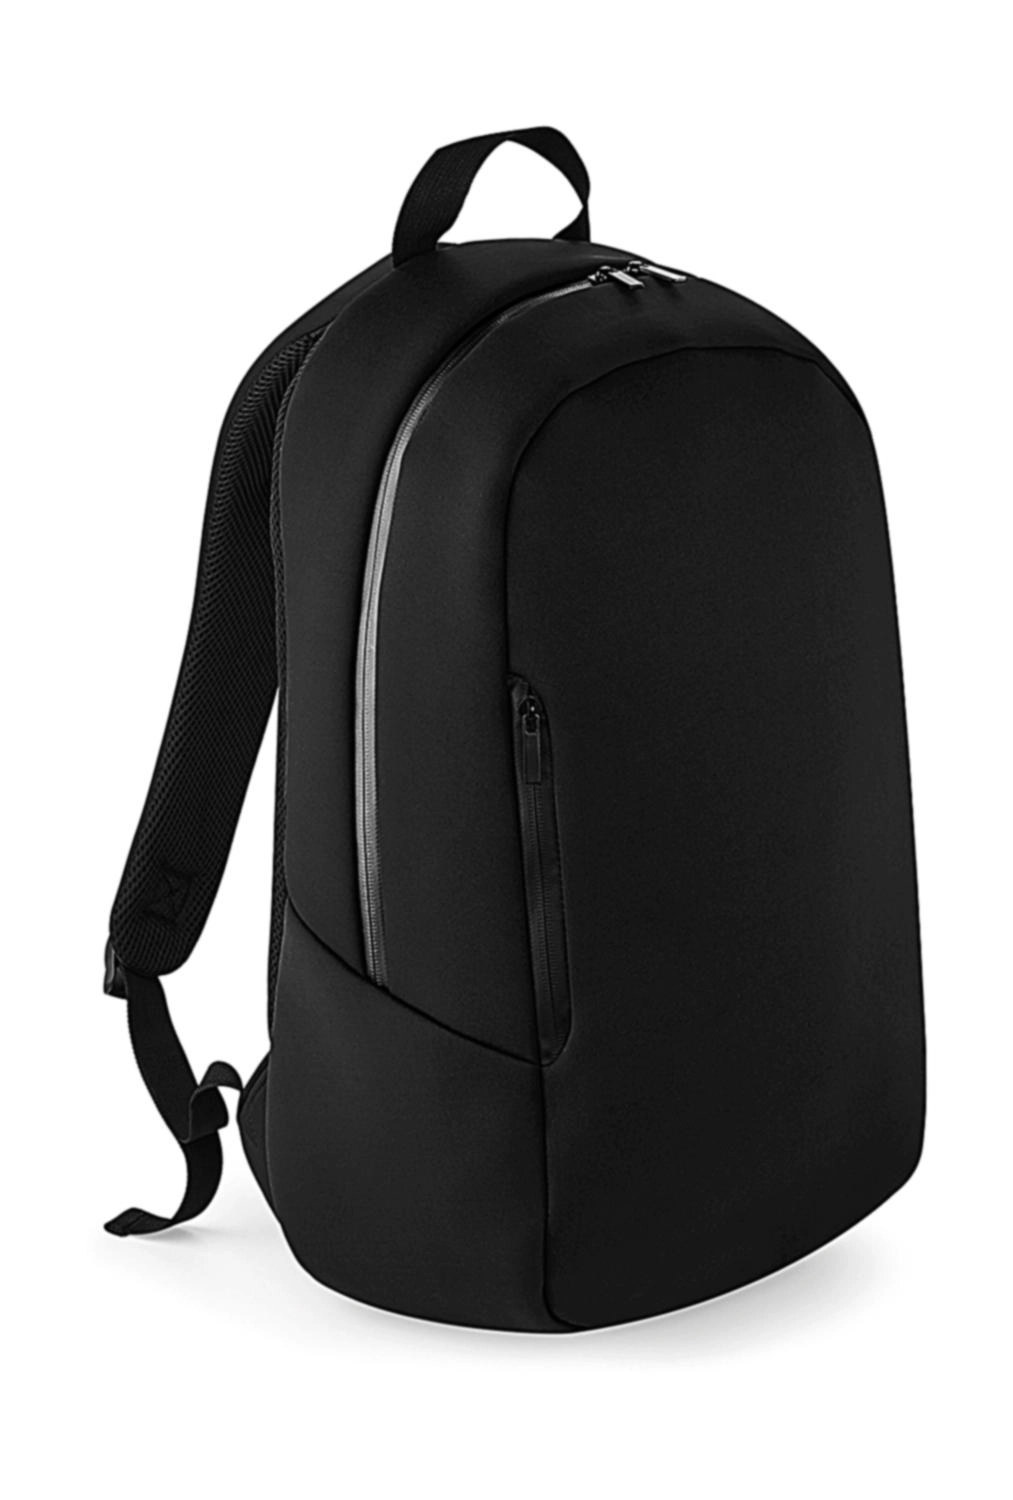 Scuba Backpack zum Besticken und Bedrucken in der Farbe Black mit Ihren Logo, Schriftzug oder Motiv.